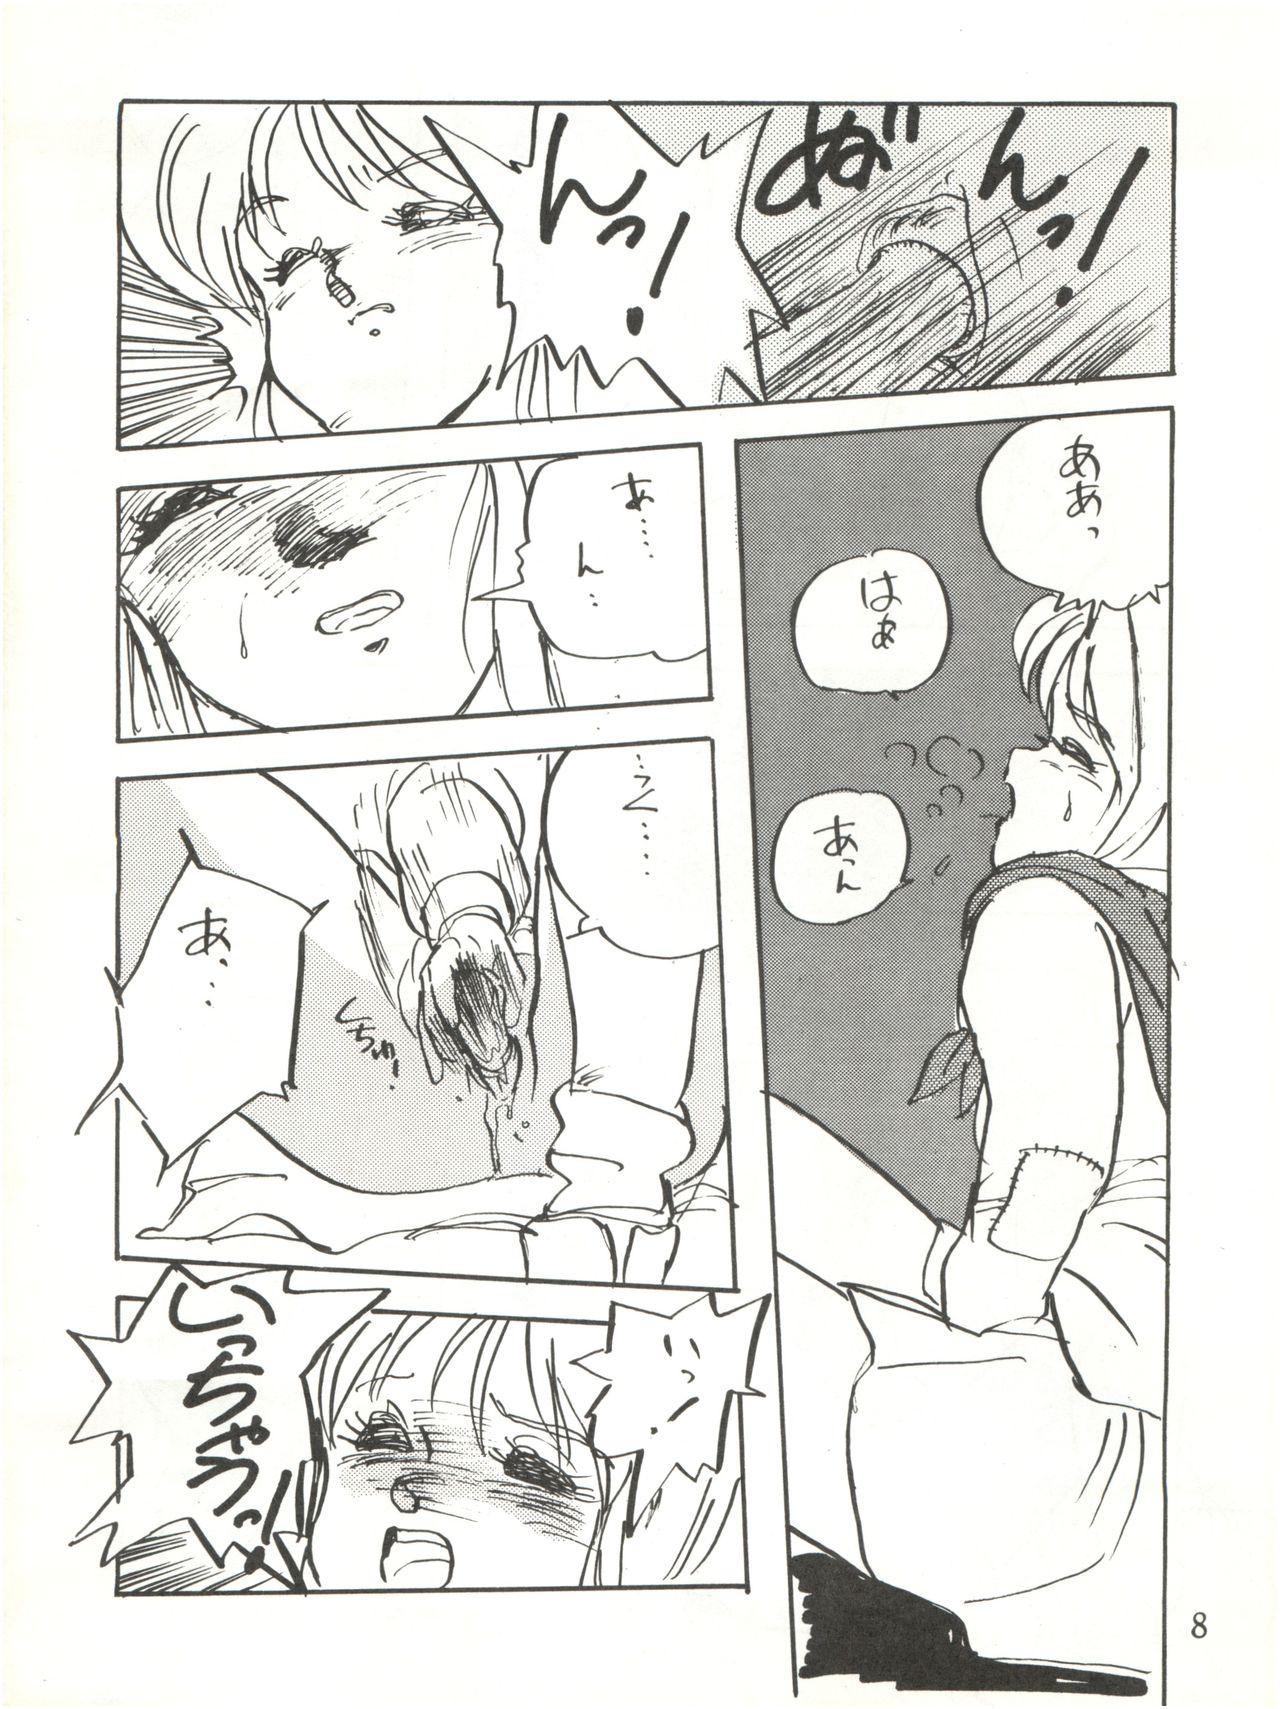 Hot Waku Waku Elpeo Land PII - Gundam zz Best Blowjob - Page 8